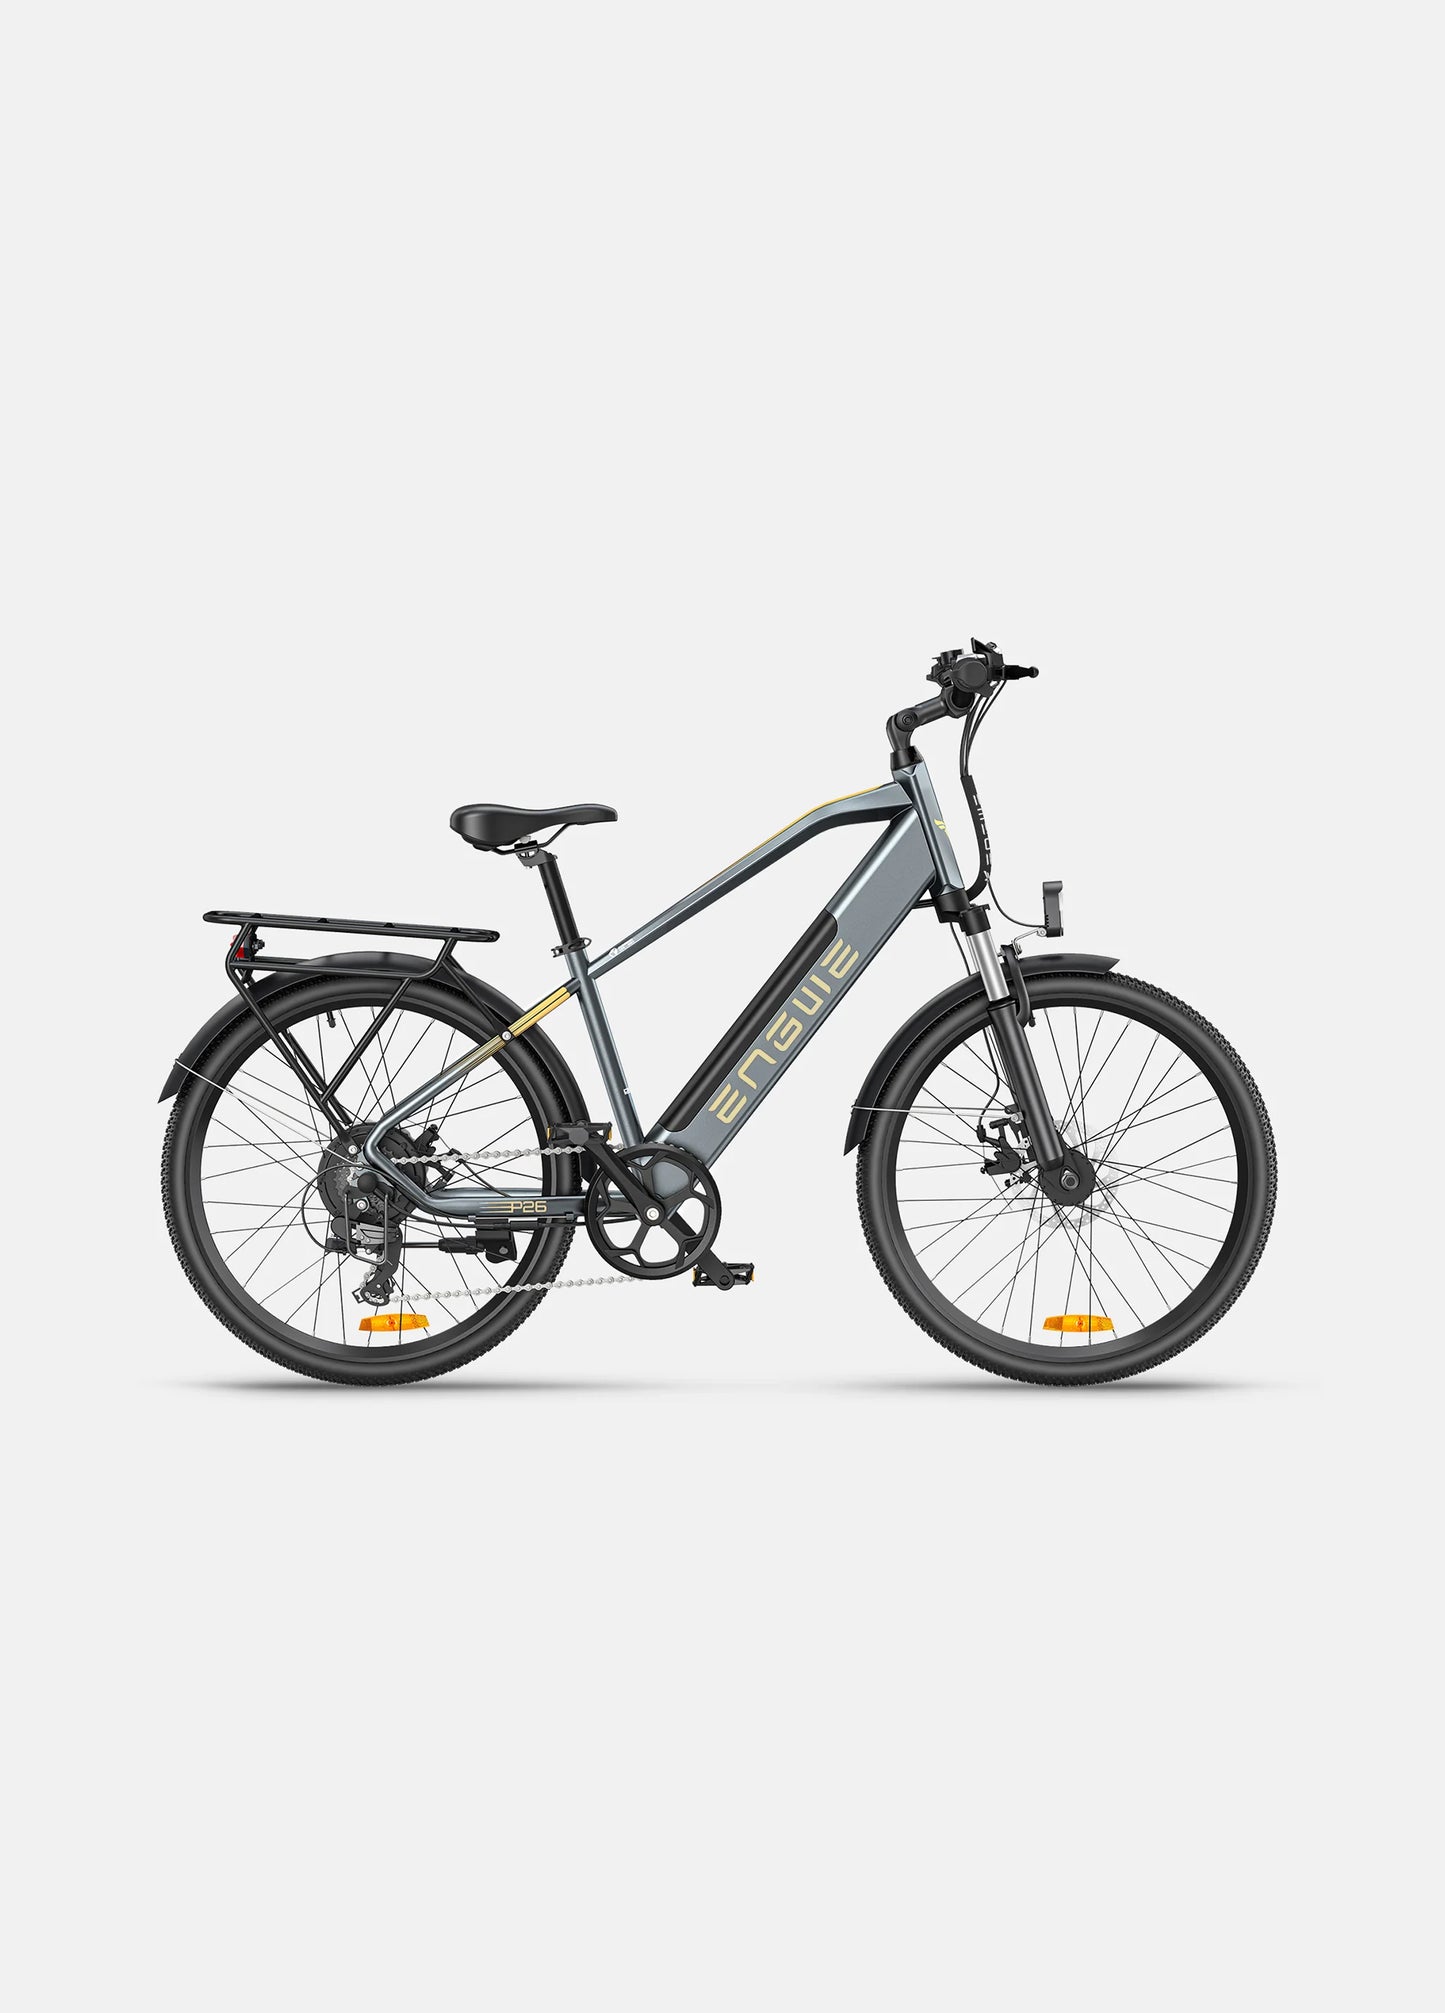 P26 Motor 250 W, baterija od 17 ah, e-bicikl za gradsko putovanje